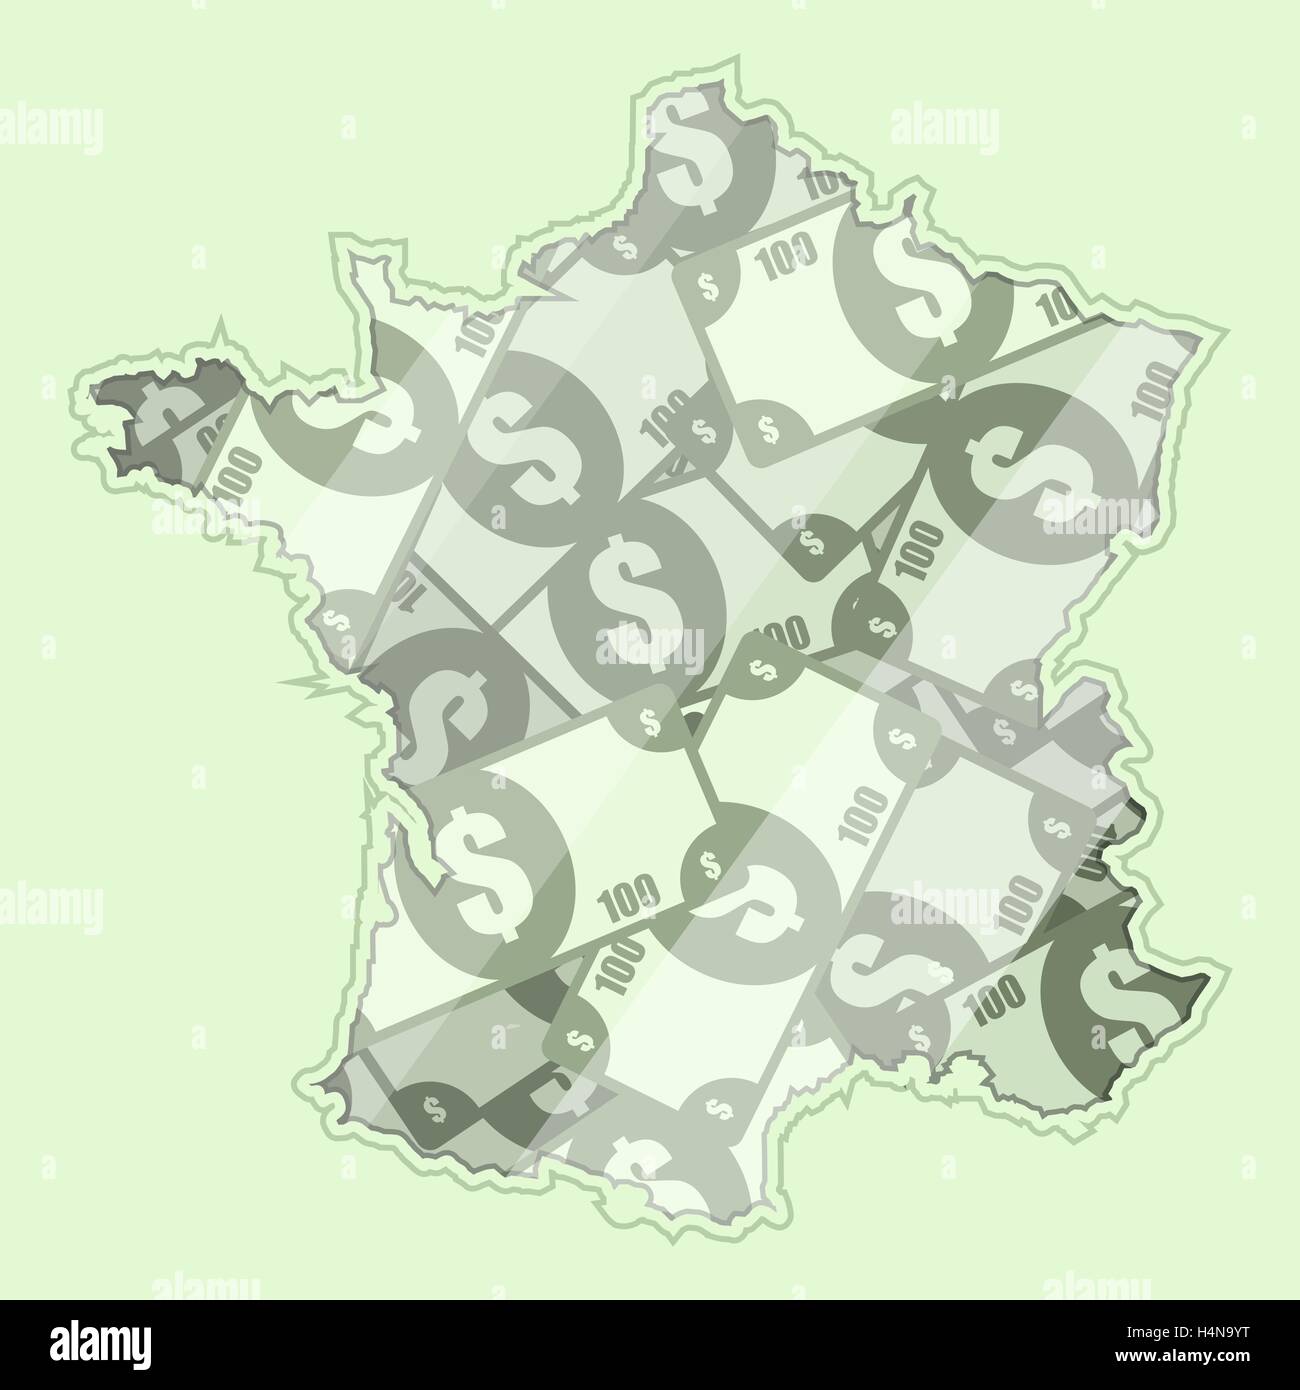 Karte Frankreich bedeckt in Geld, Banknoten von 100 US-Dollar. Auf der Karte gibt es Glas Reflexion. Konzeptionelle. Stock Vektor